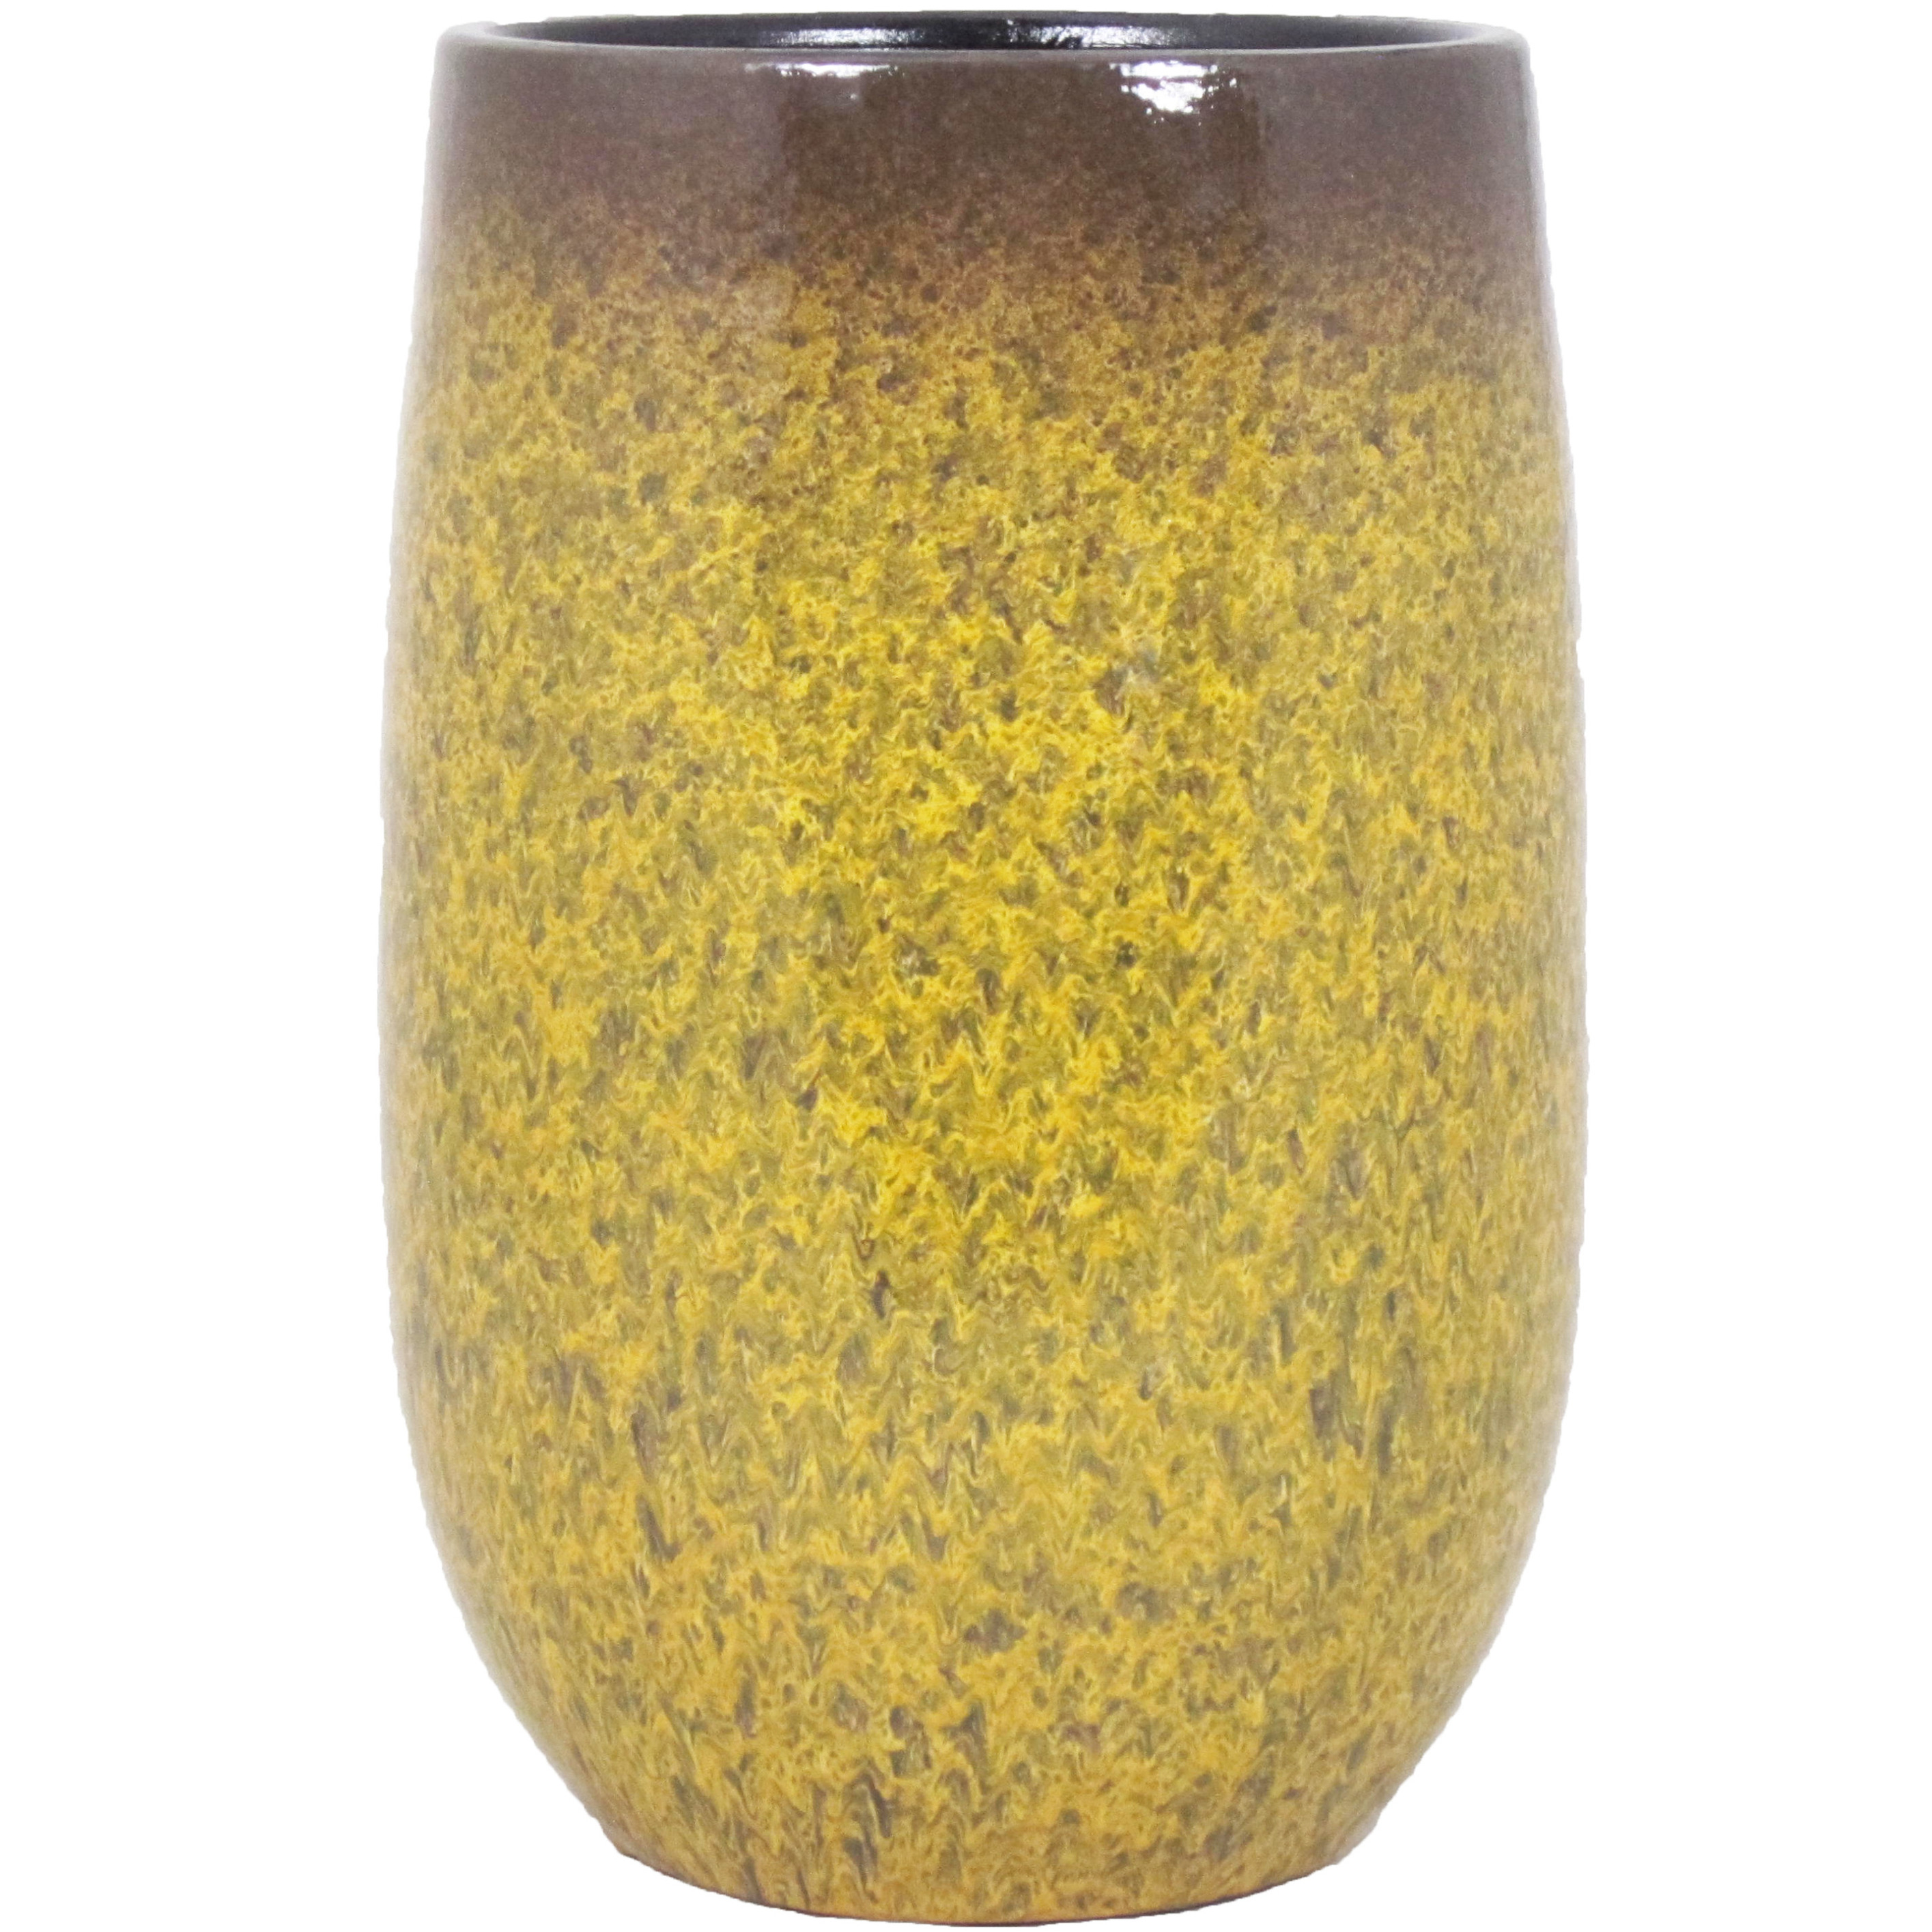 Bloempot vaas goud geel flakes keramiek voor bloemen-planten H30 x D19 cm